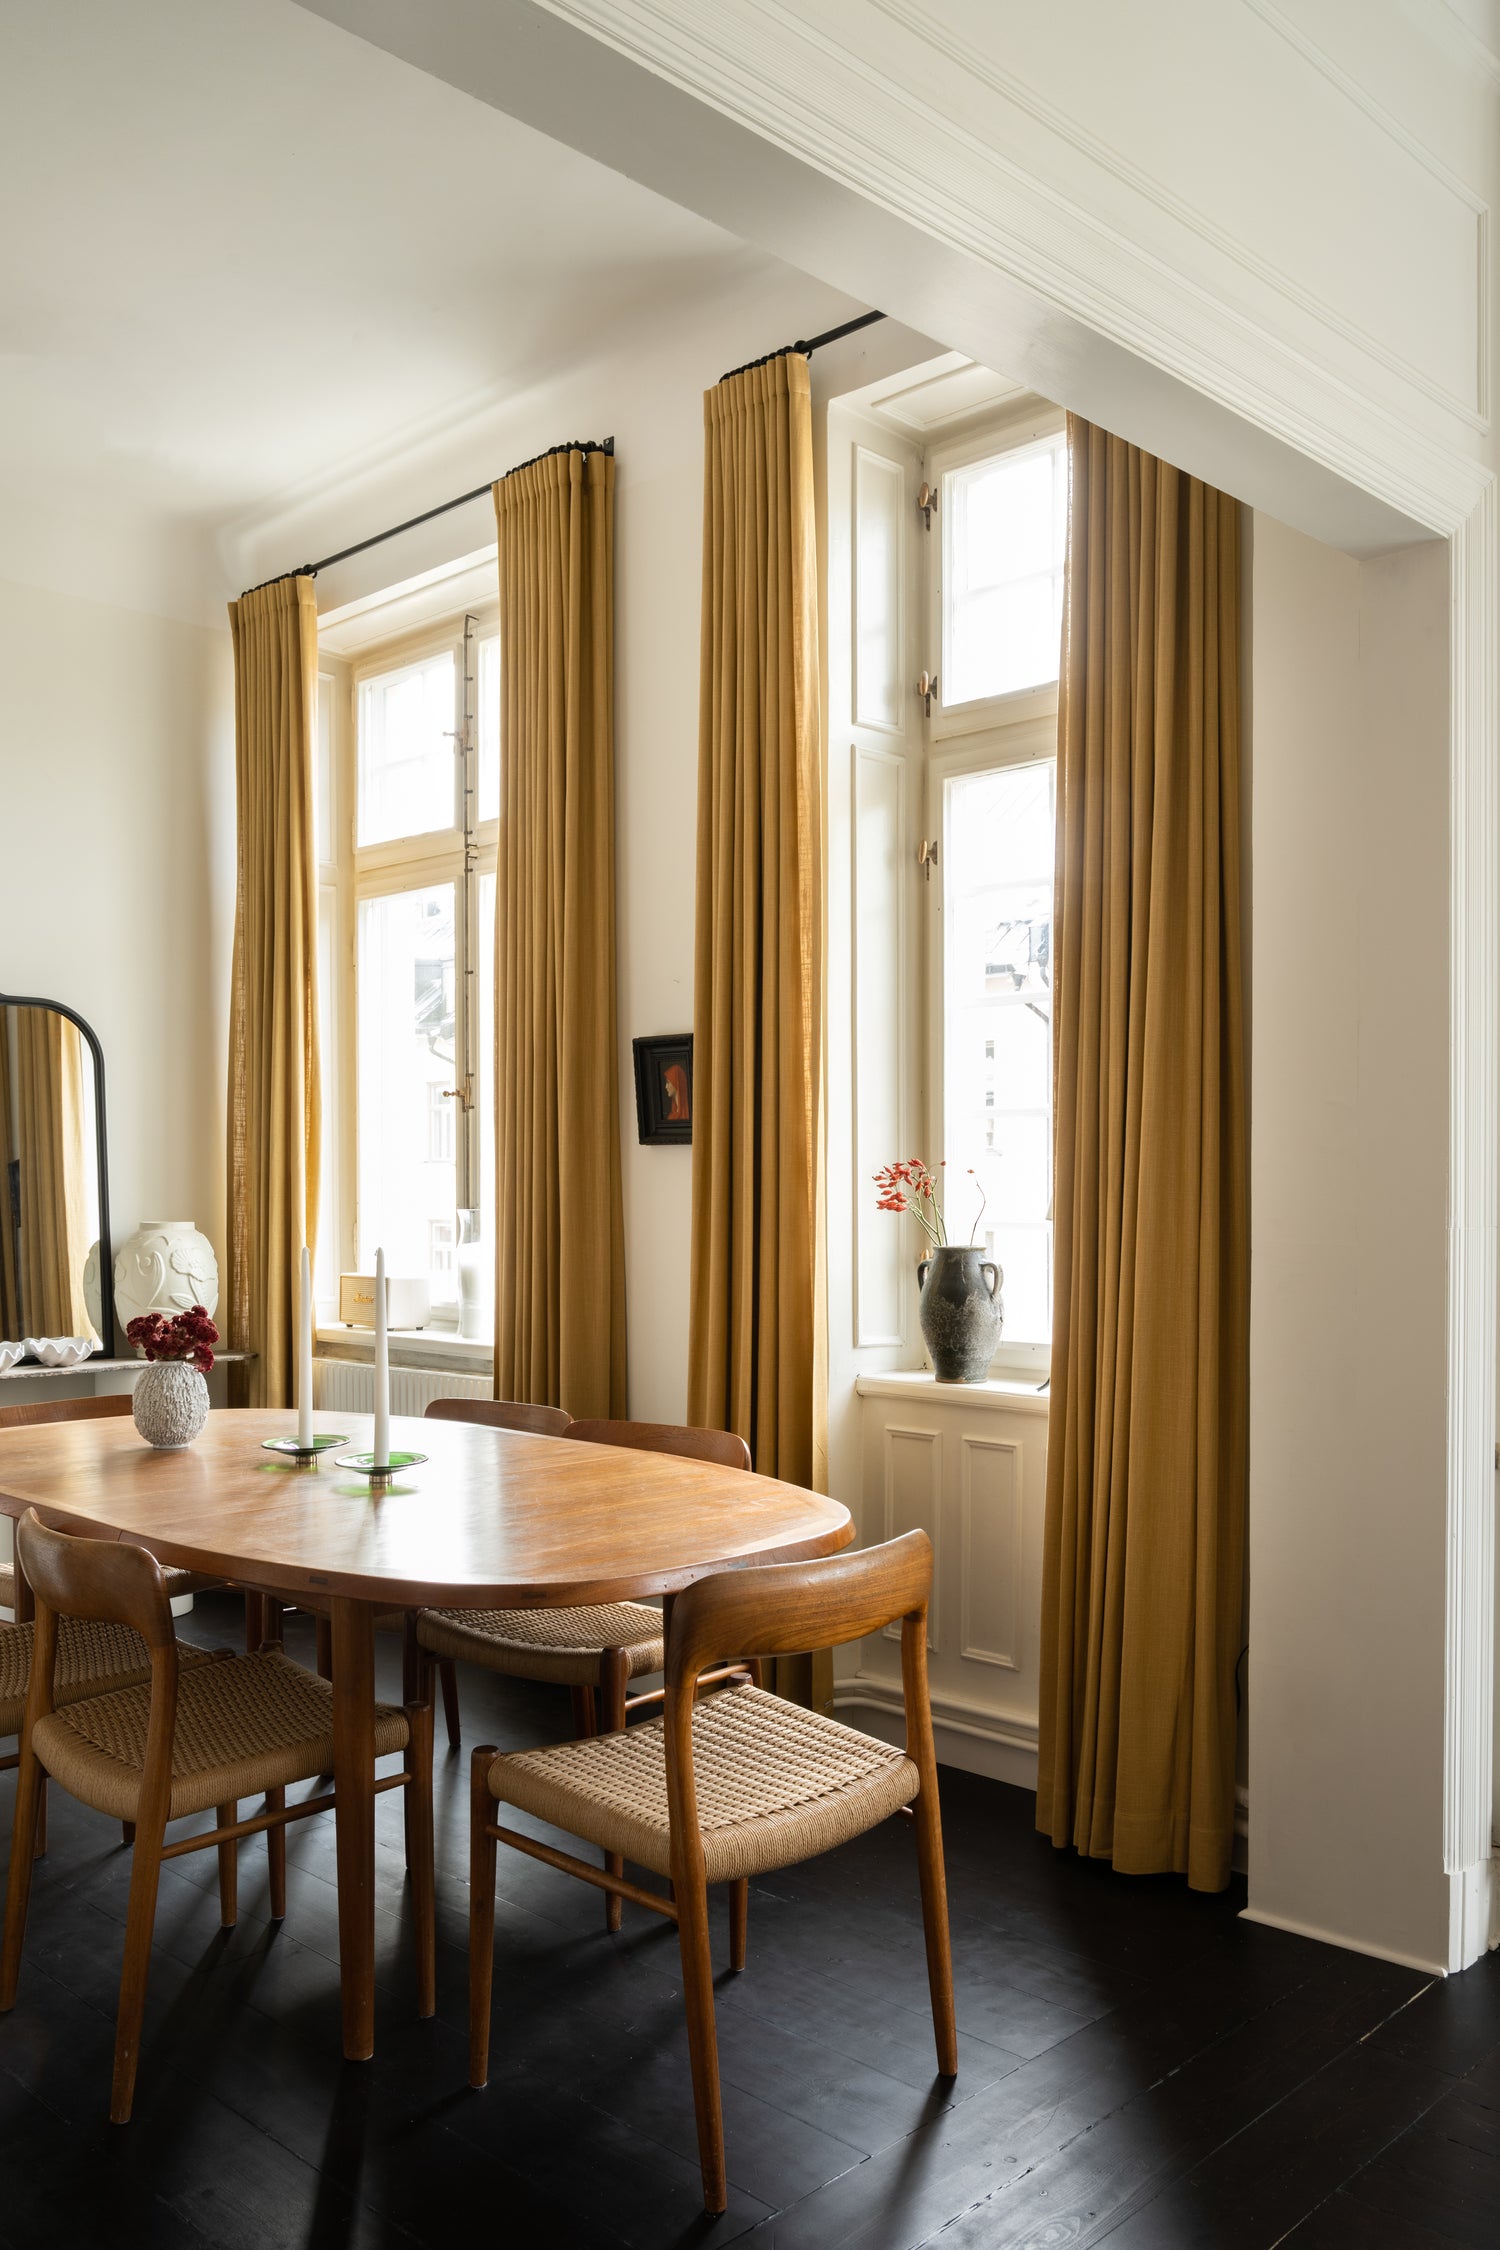 Bilde av en klassisk leilighet, stue med hvite vegger, malte svarte gulv. Sennepsgule okergule gardiner i svart gardinstang. Retro møbler: Ovalt spisebord og spisestoler i varmt treverk. 